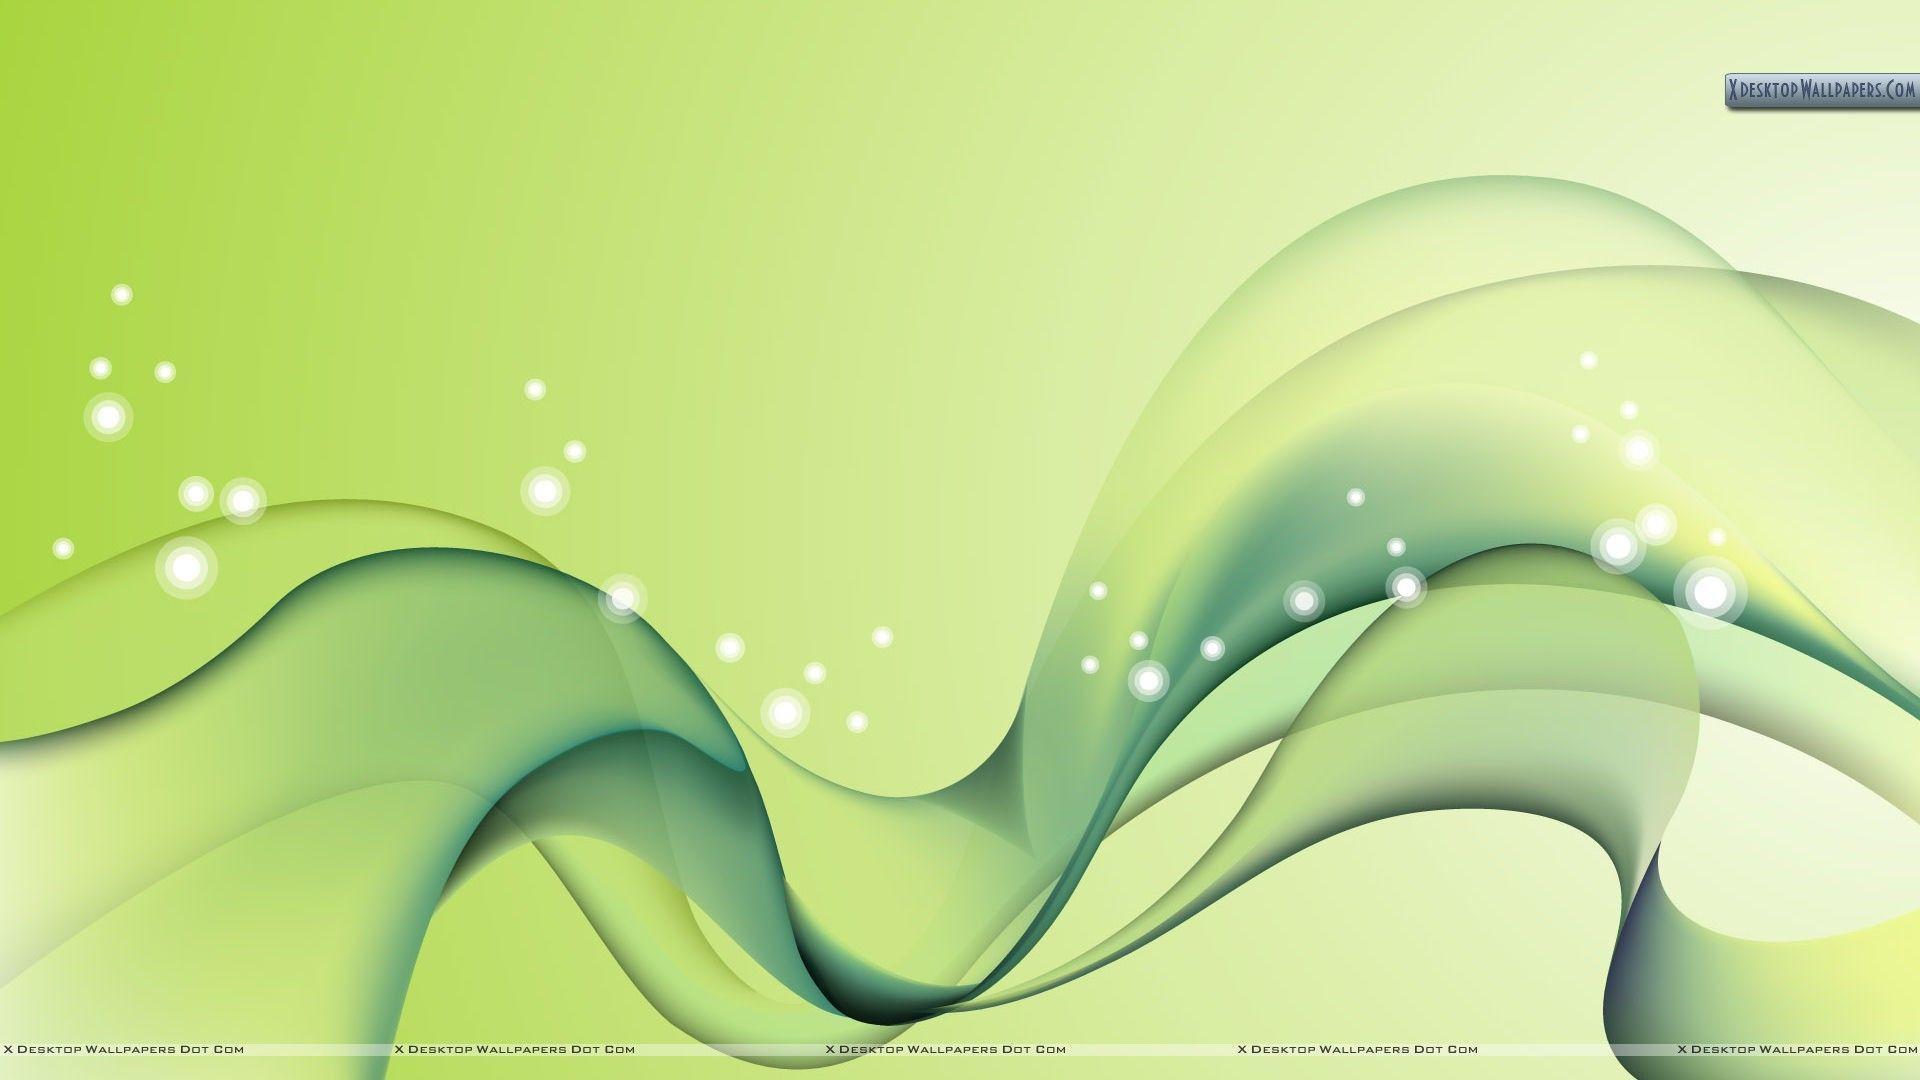 Wallpaper For > Wallpaper Background Light Green